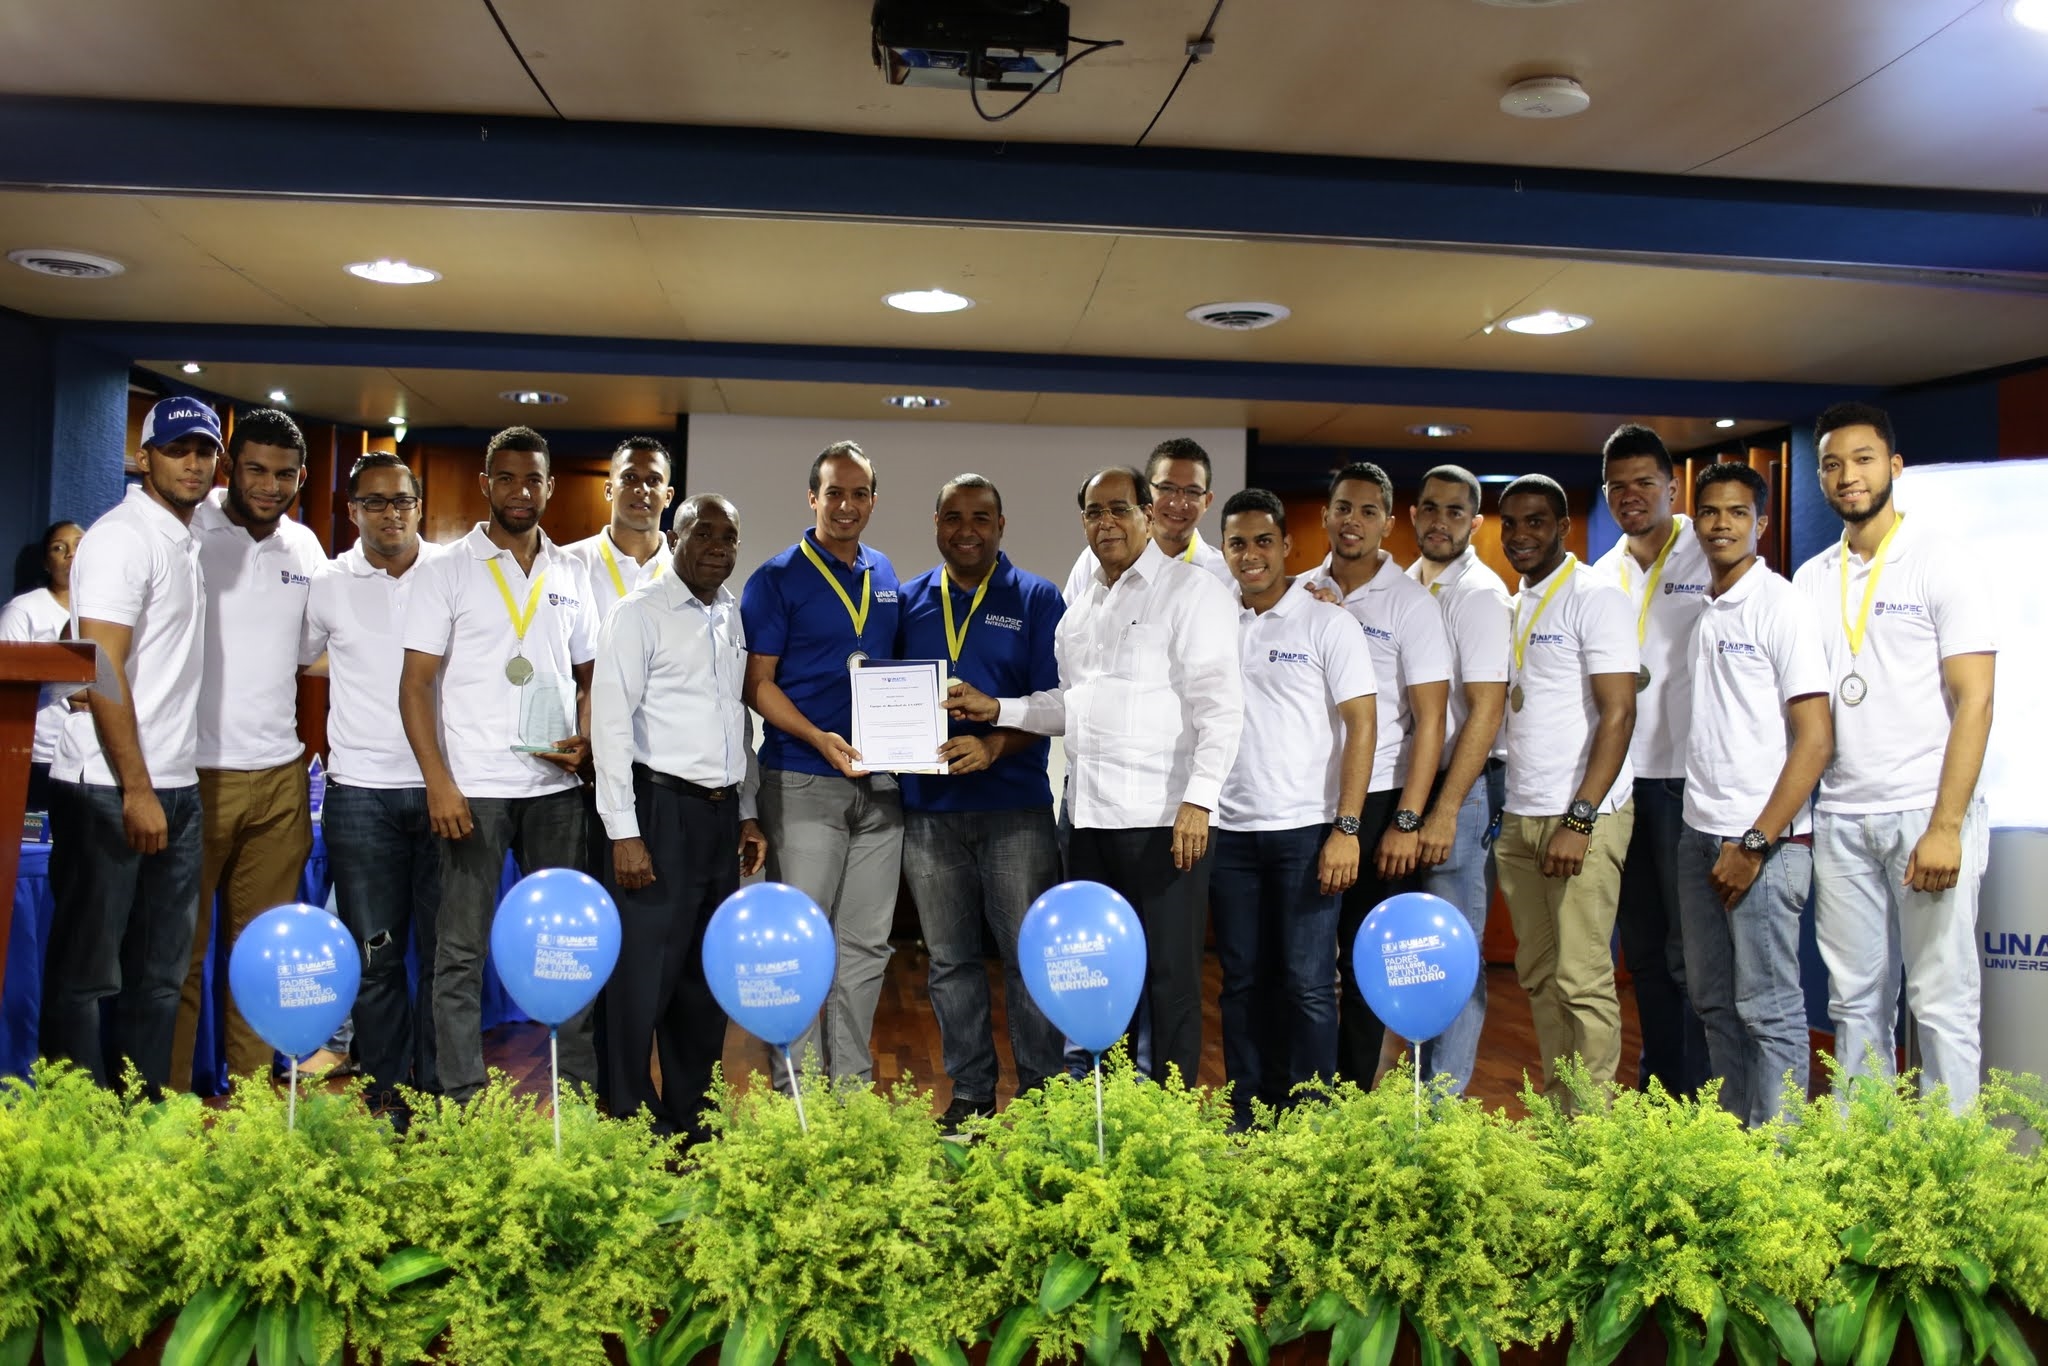 El equipo de Baseball de UNAPEC fue reconocido en el acto.-